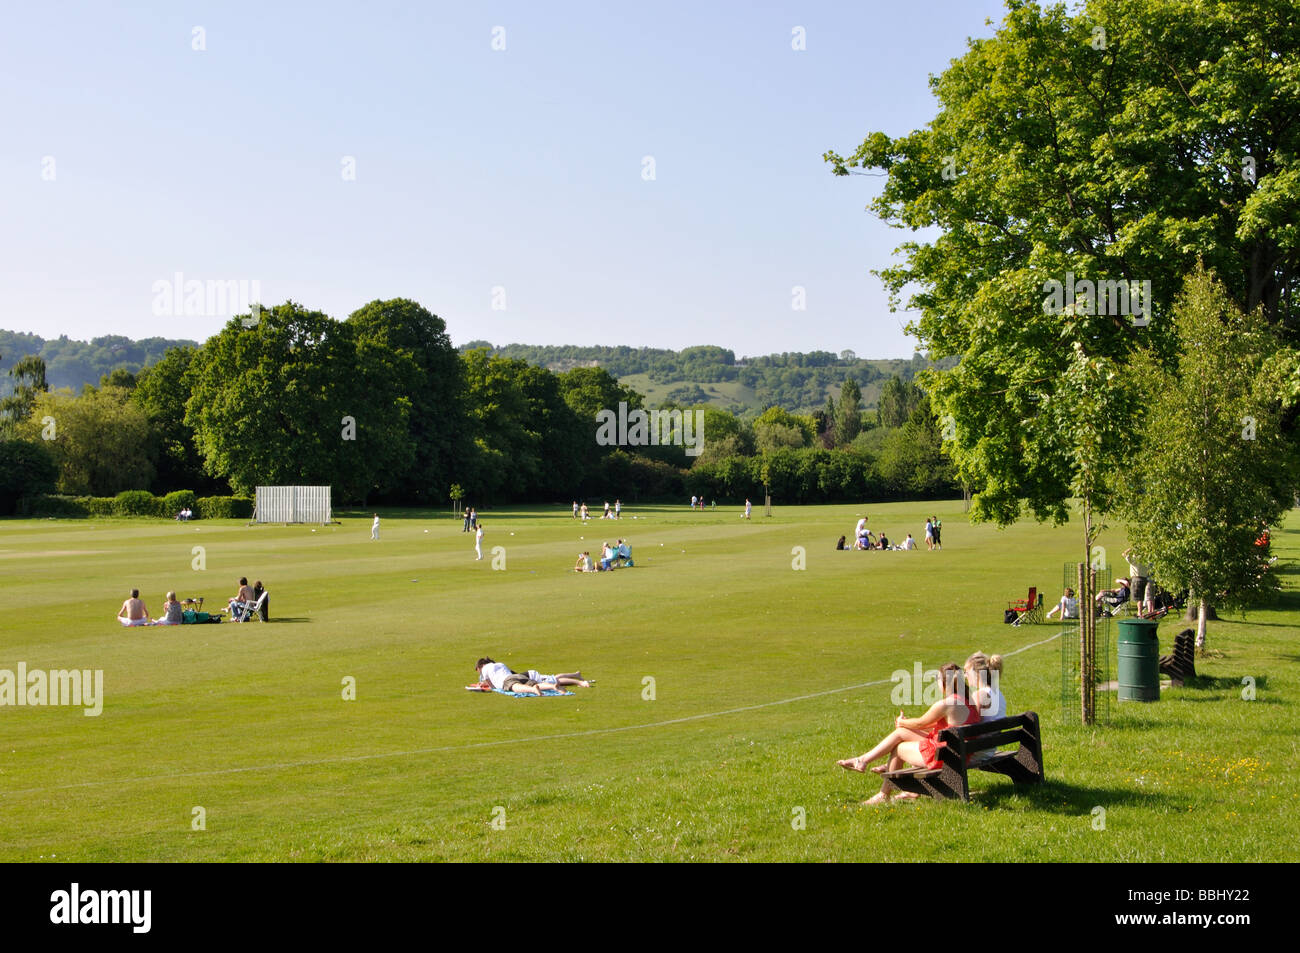 Match de cricket sur vert, Oxted, Surrey, Angleterre, Royaume-Uni Banque D'Images